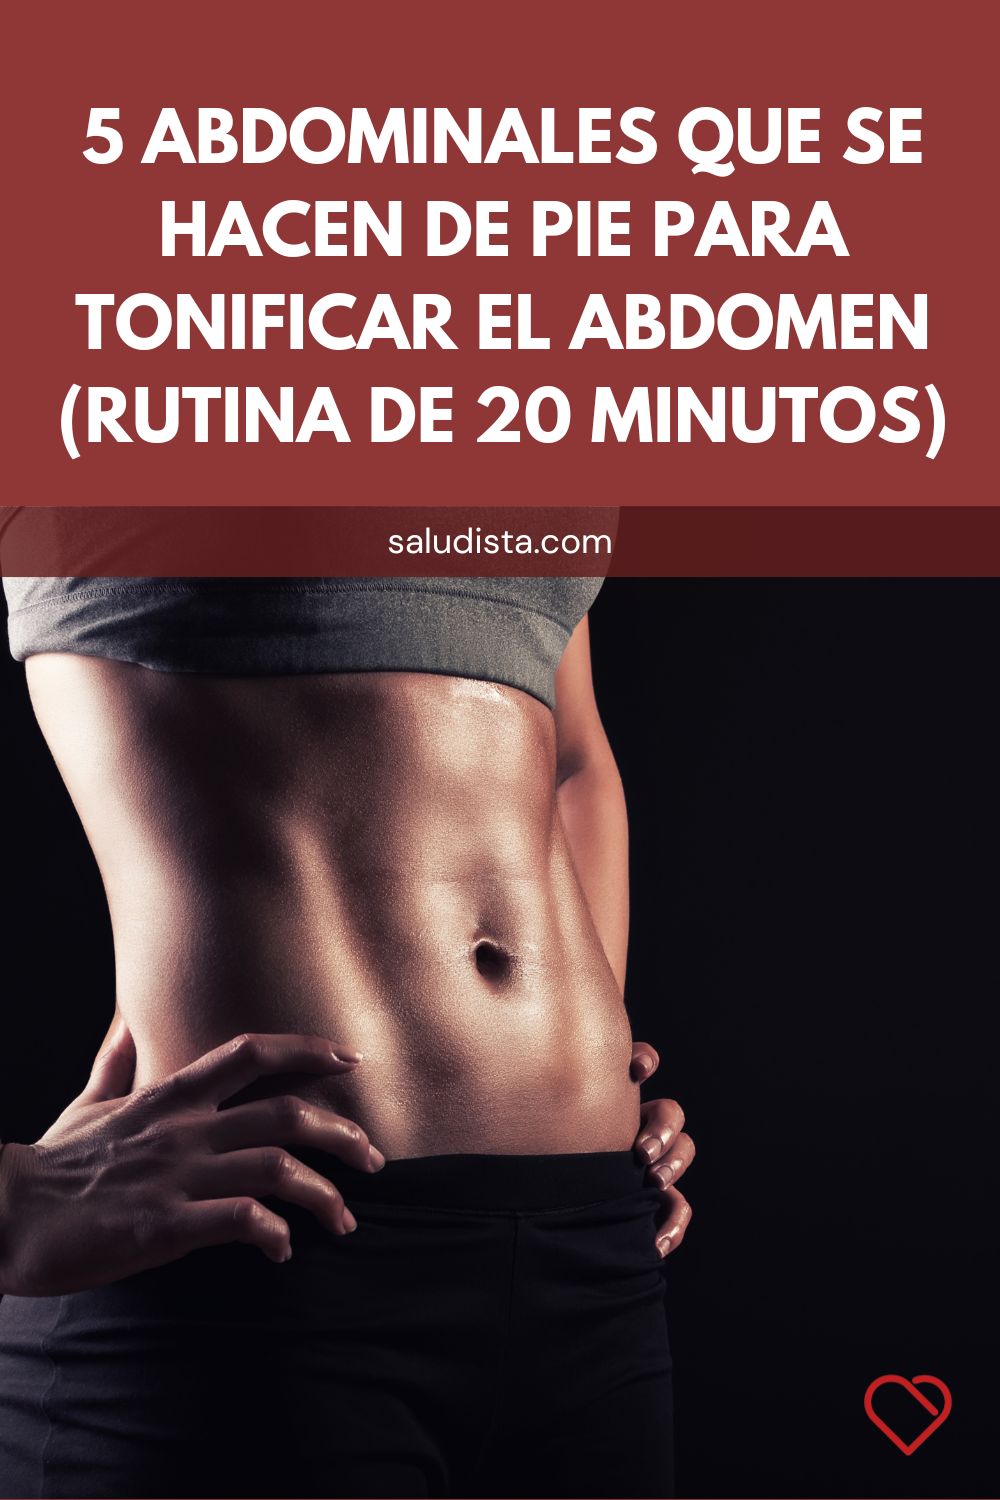 5 abdominales que se hacen de pie para tonificar el abdomen (rutina de 20 minutos)